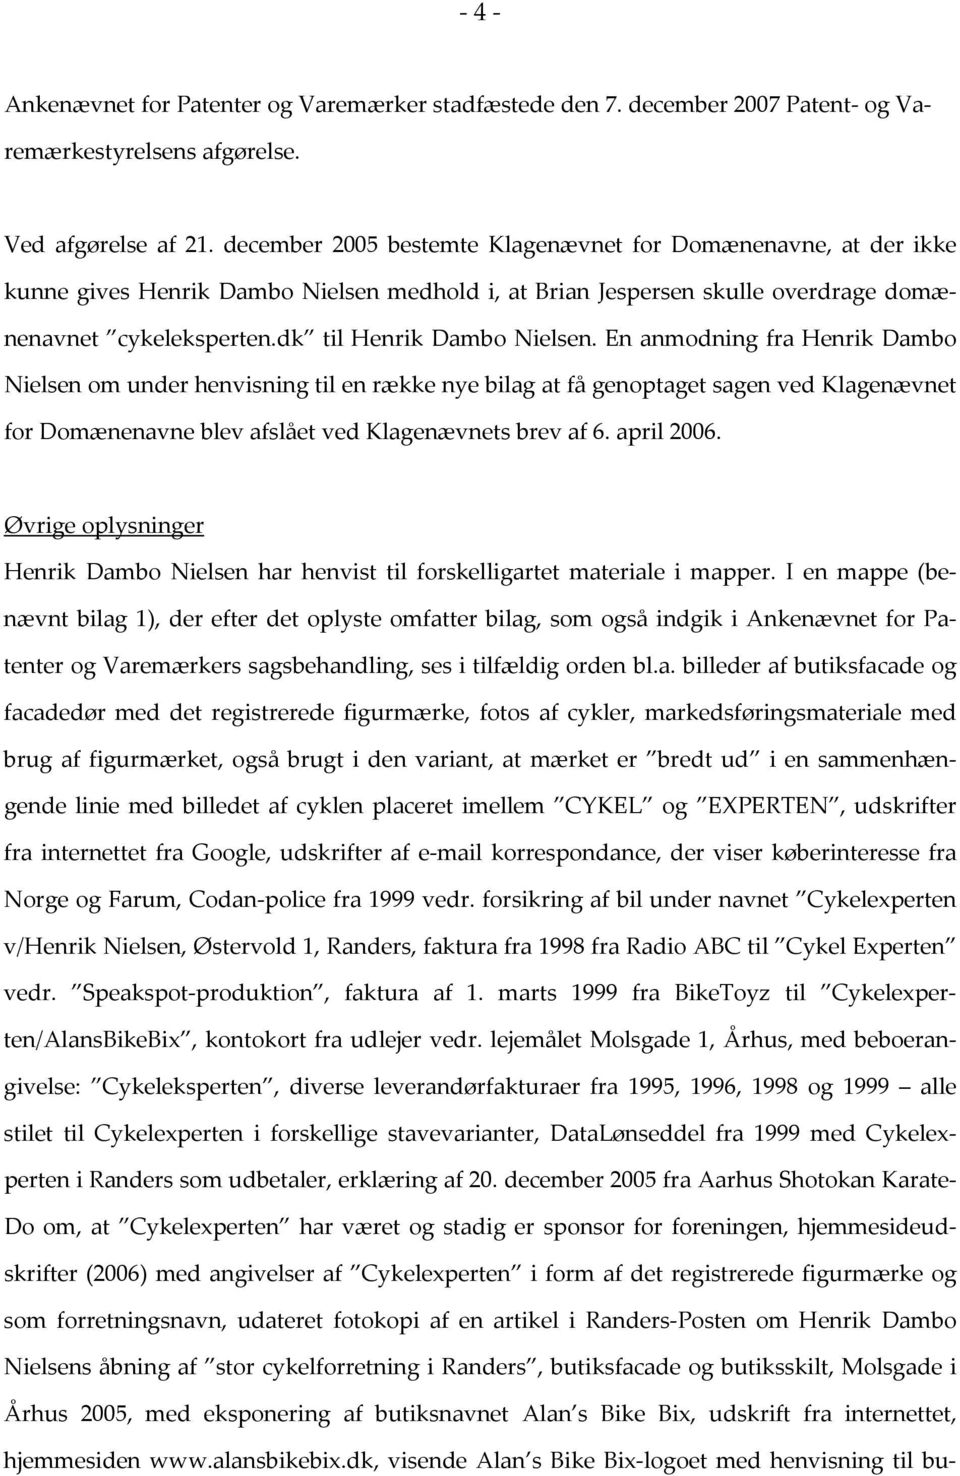 En anmodning fra Henrik Dambo Nielsen om under henvisning til en række nye bilag at få genoptaget sagen ved Klagenævnet for Domænenavne blev afslået ved Klagenævnets brev af 6. april 2006.